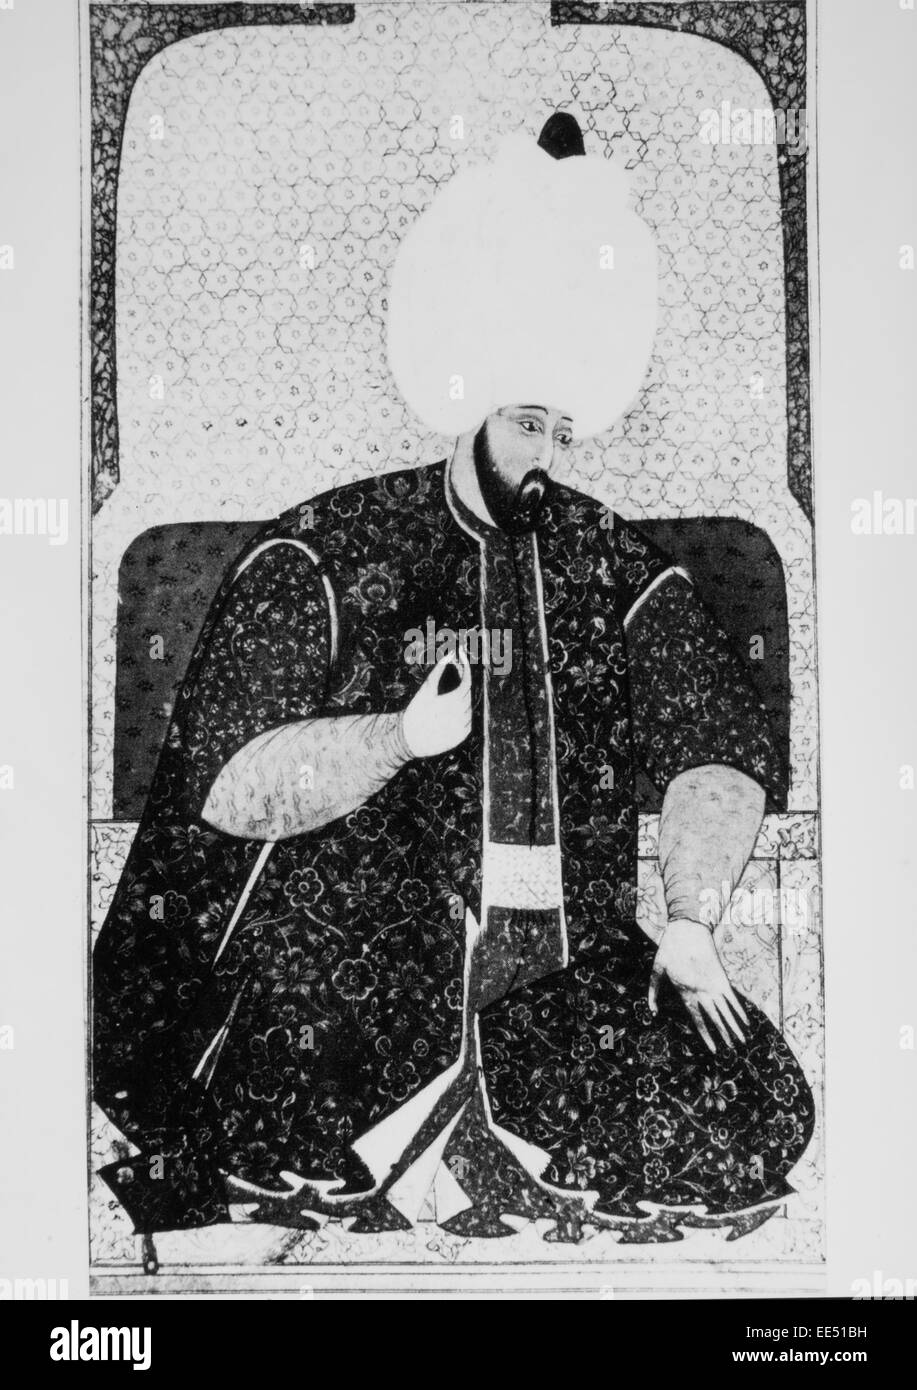 Sulayman ich oder Sulayman herrliche (1494-1566), osmanischer Sultan, Porträt Stockfoto